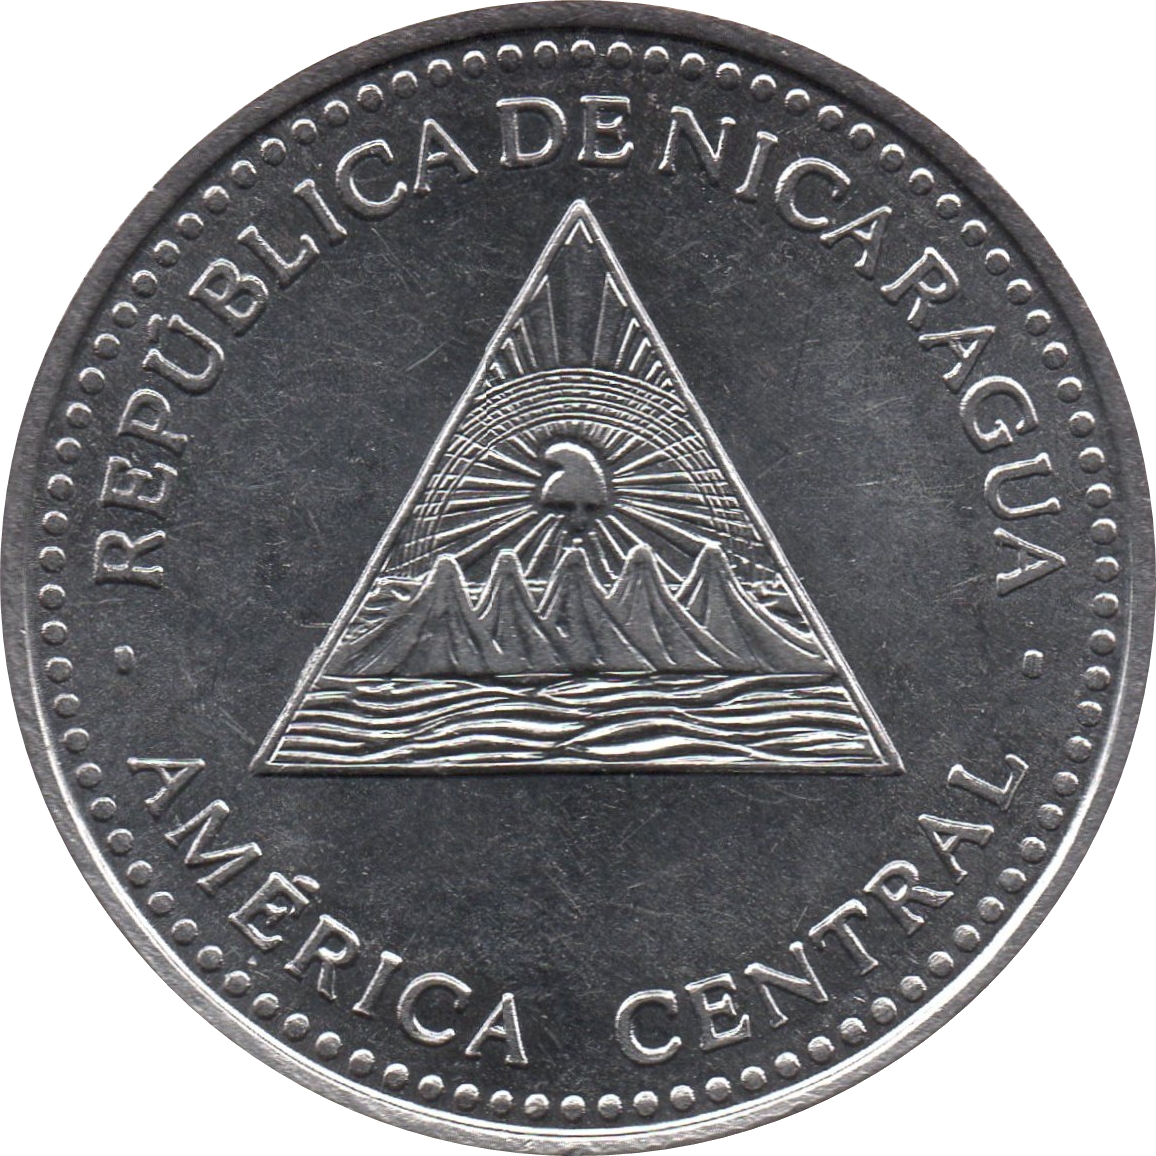 Nicaraguan Cordoba (NIO)